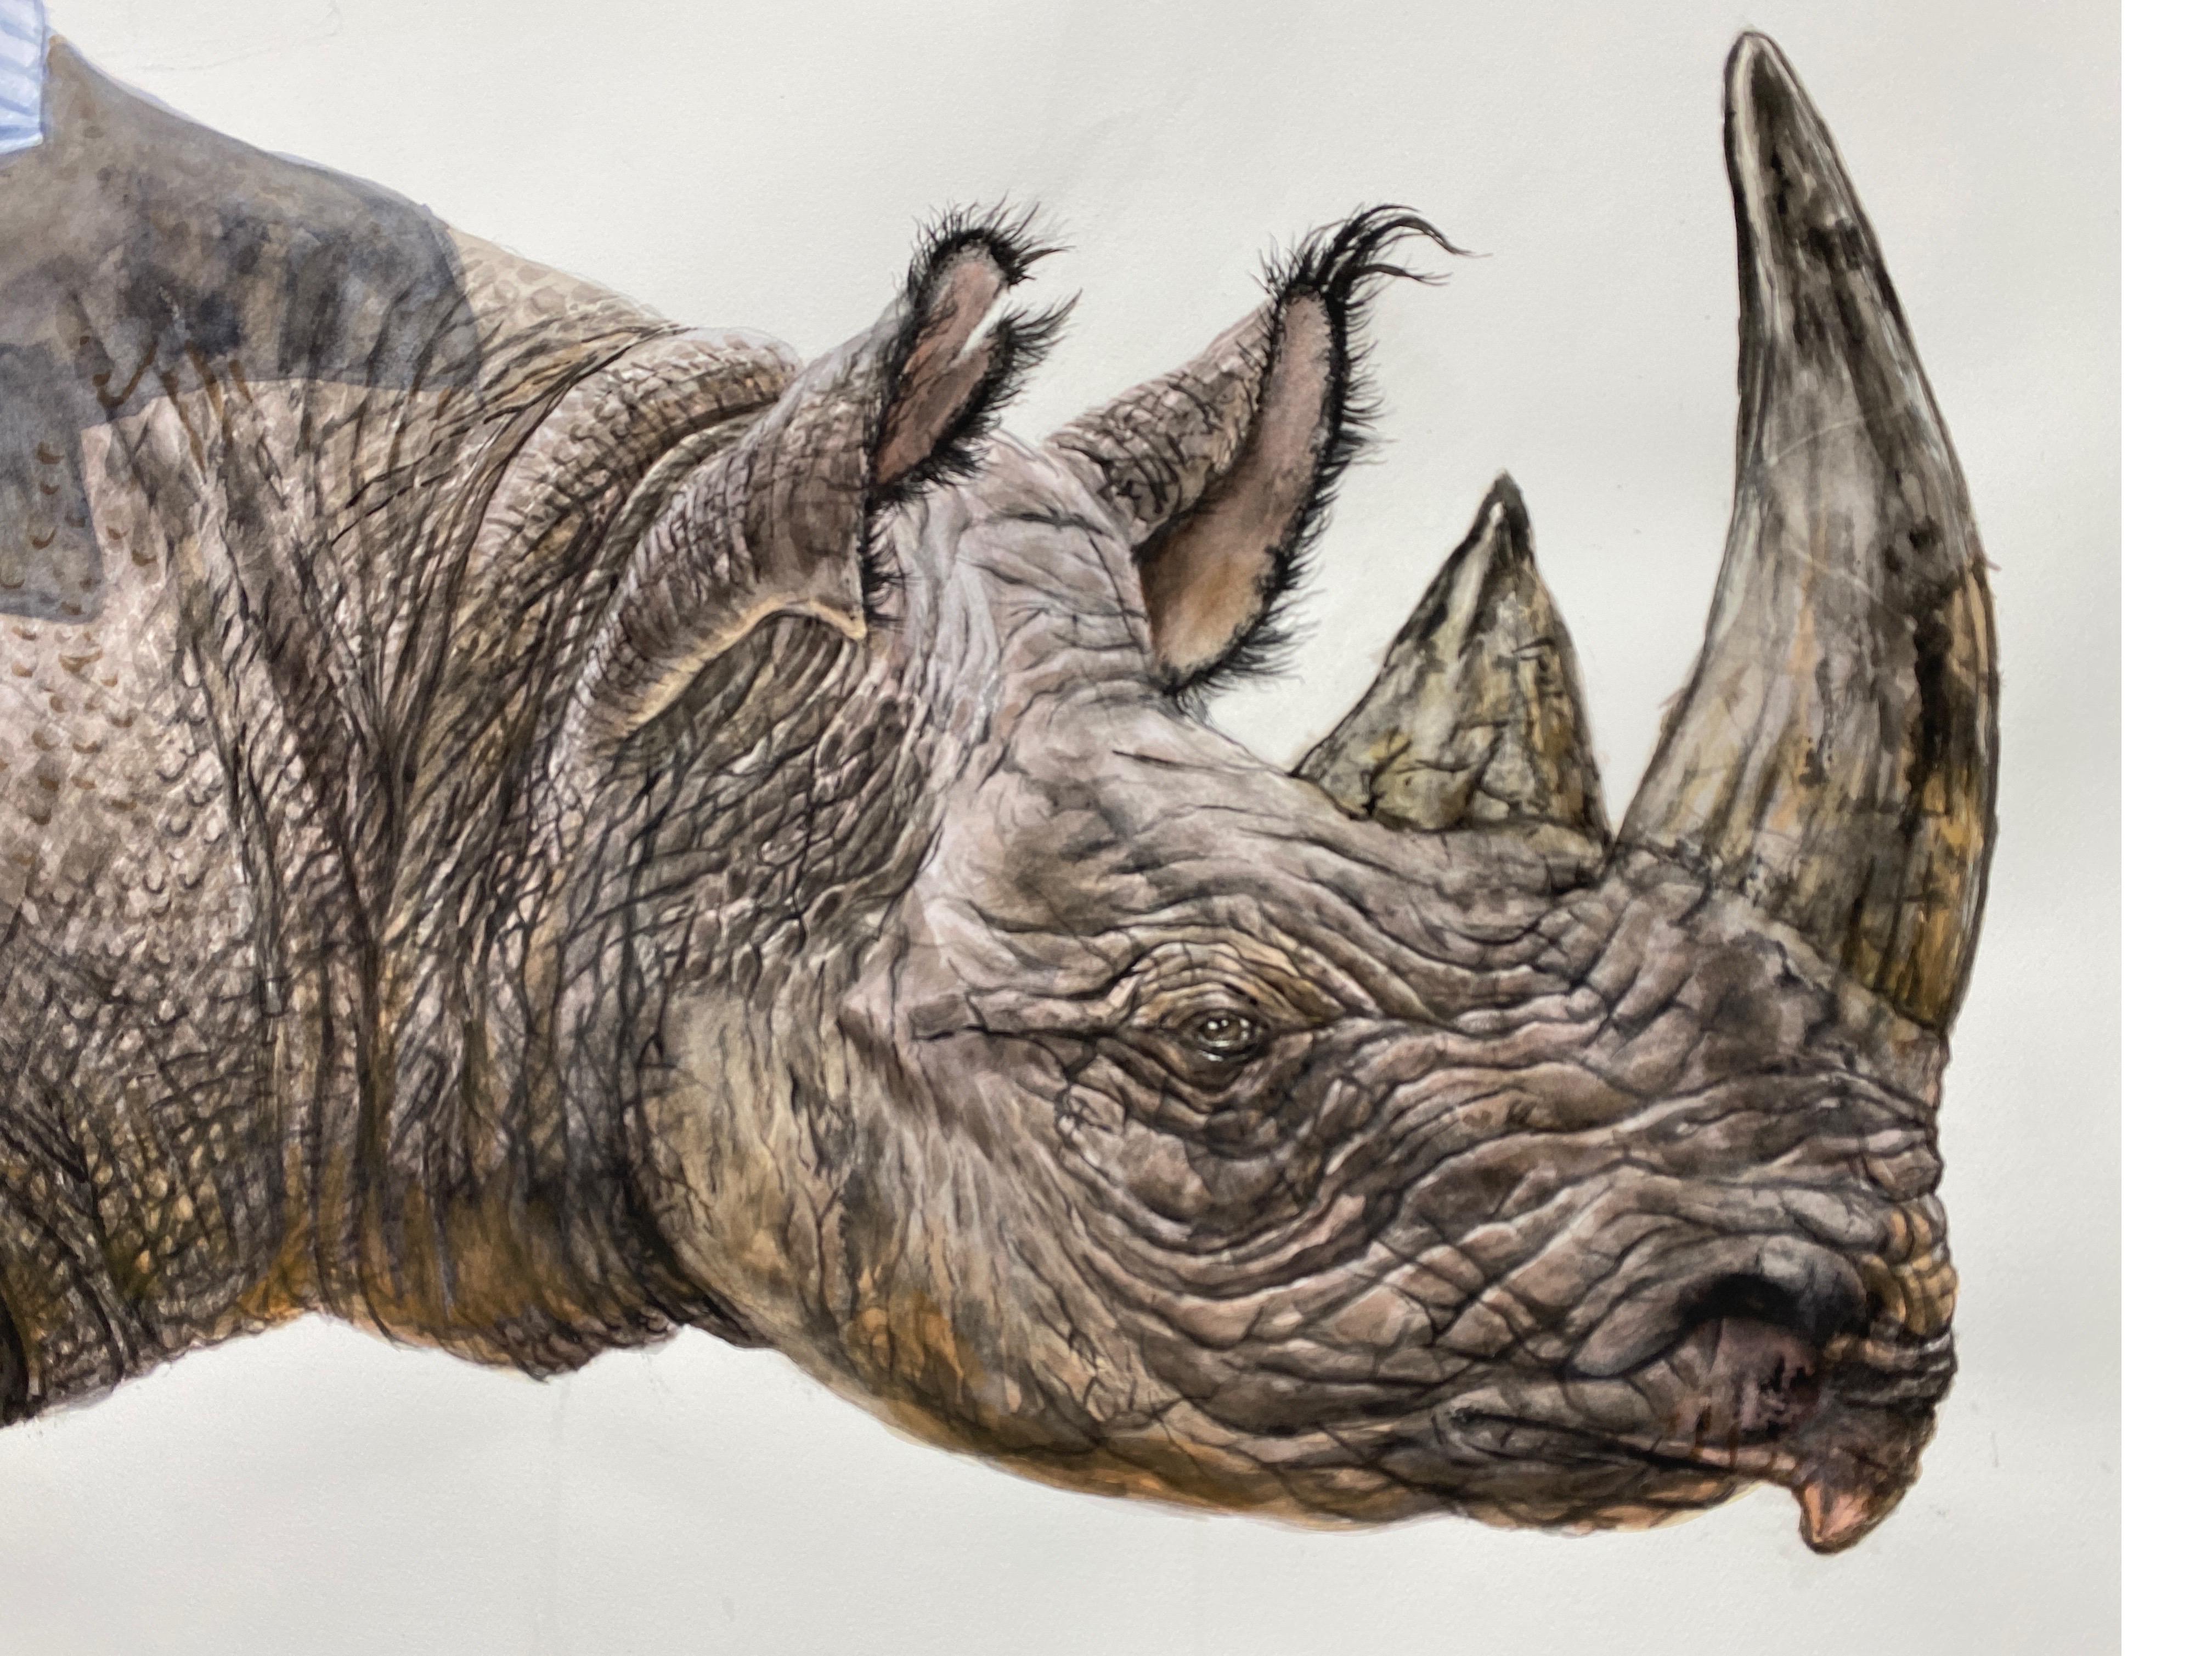 Zeitgenössisches surrealistisches, großformatiges Aquarellgemälde „Respite“ von Rhinoceros  – Painting von Thomas Broadbent